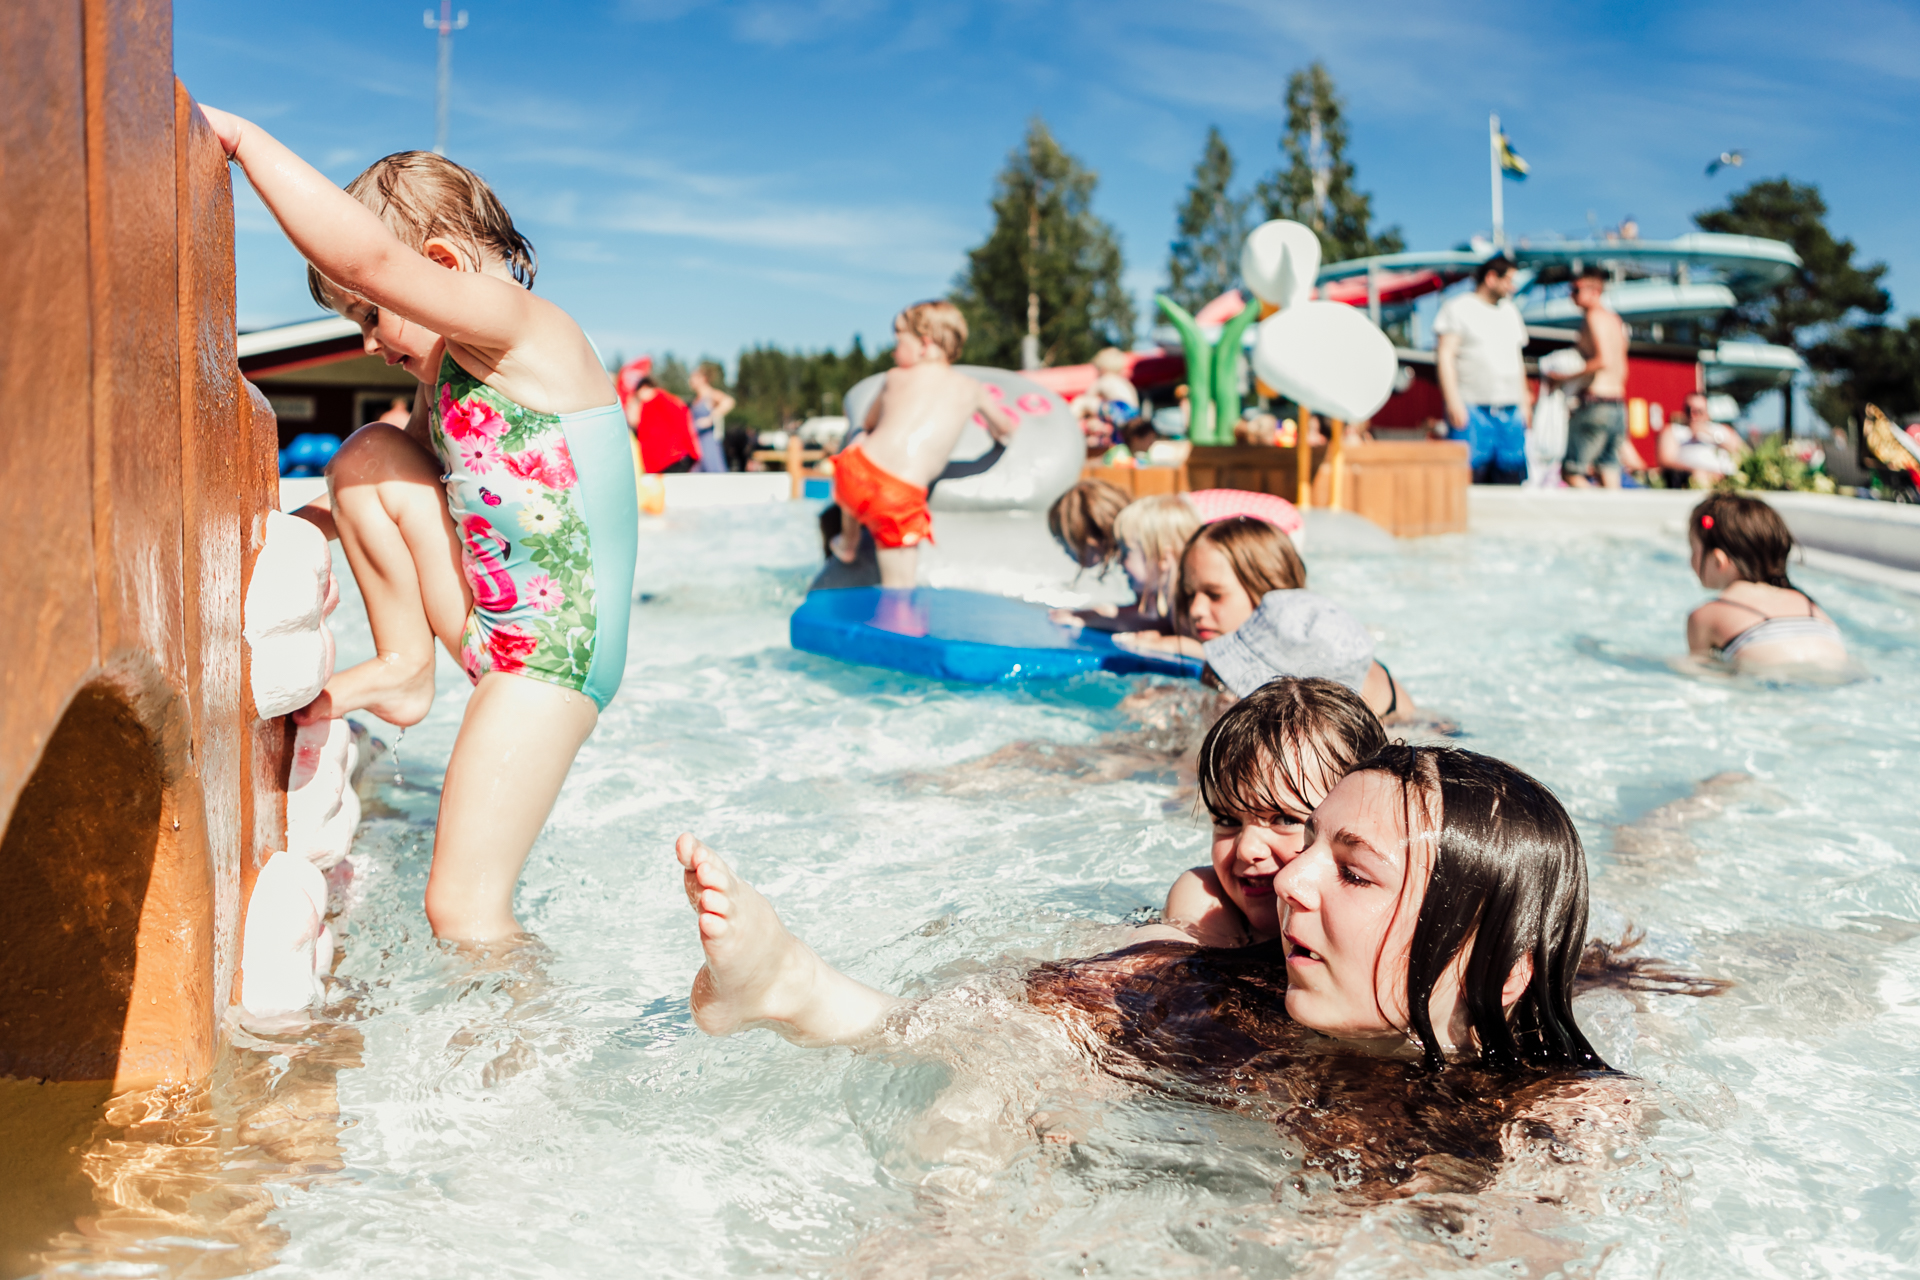 Discover Skellefteå's scenic swim spots